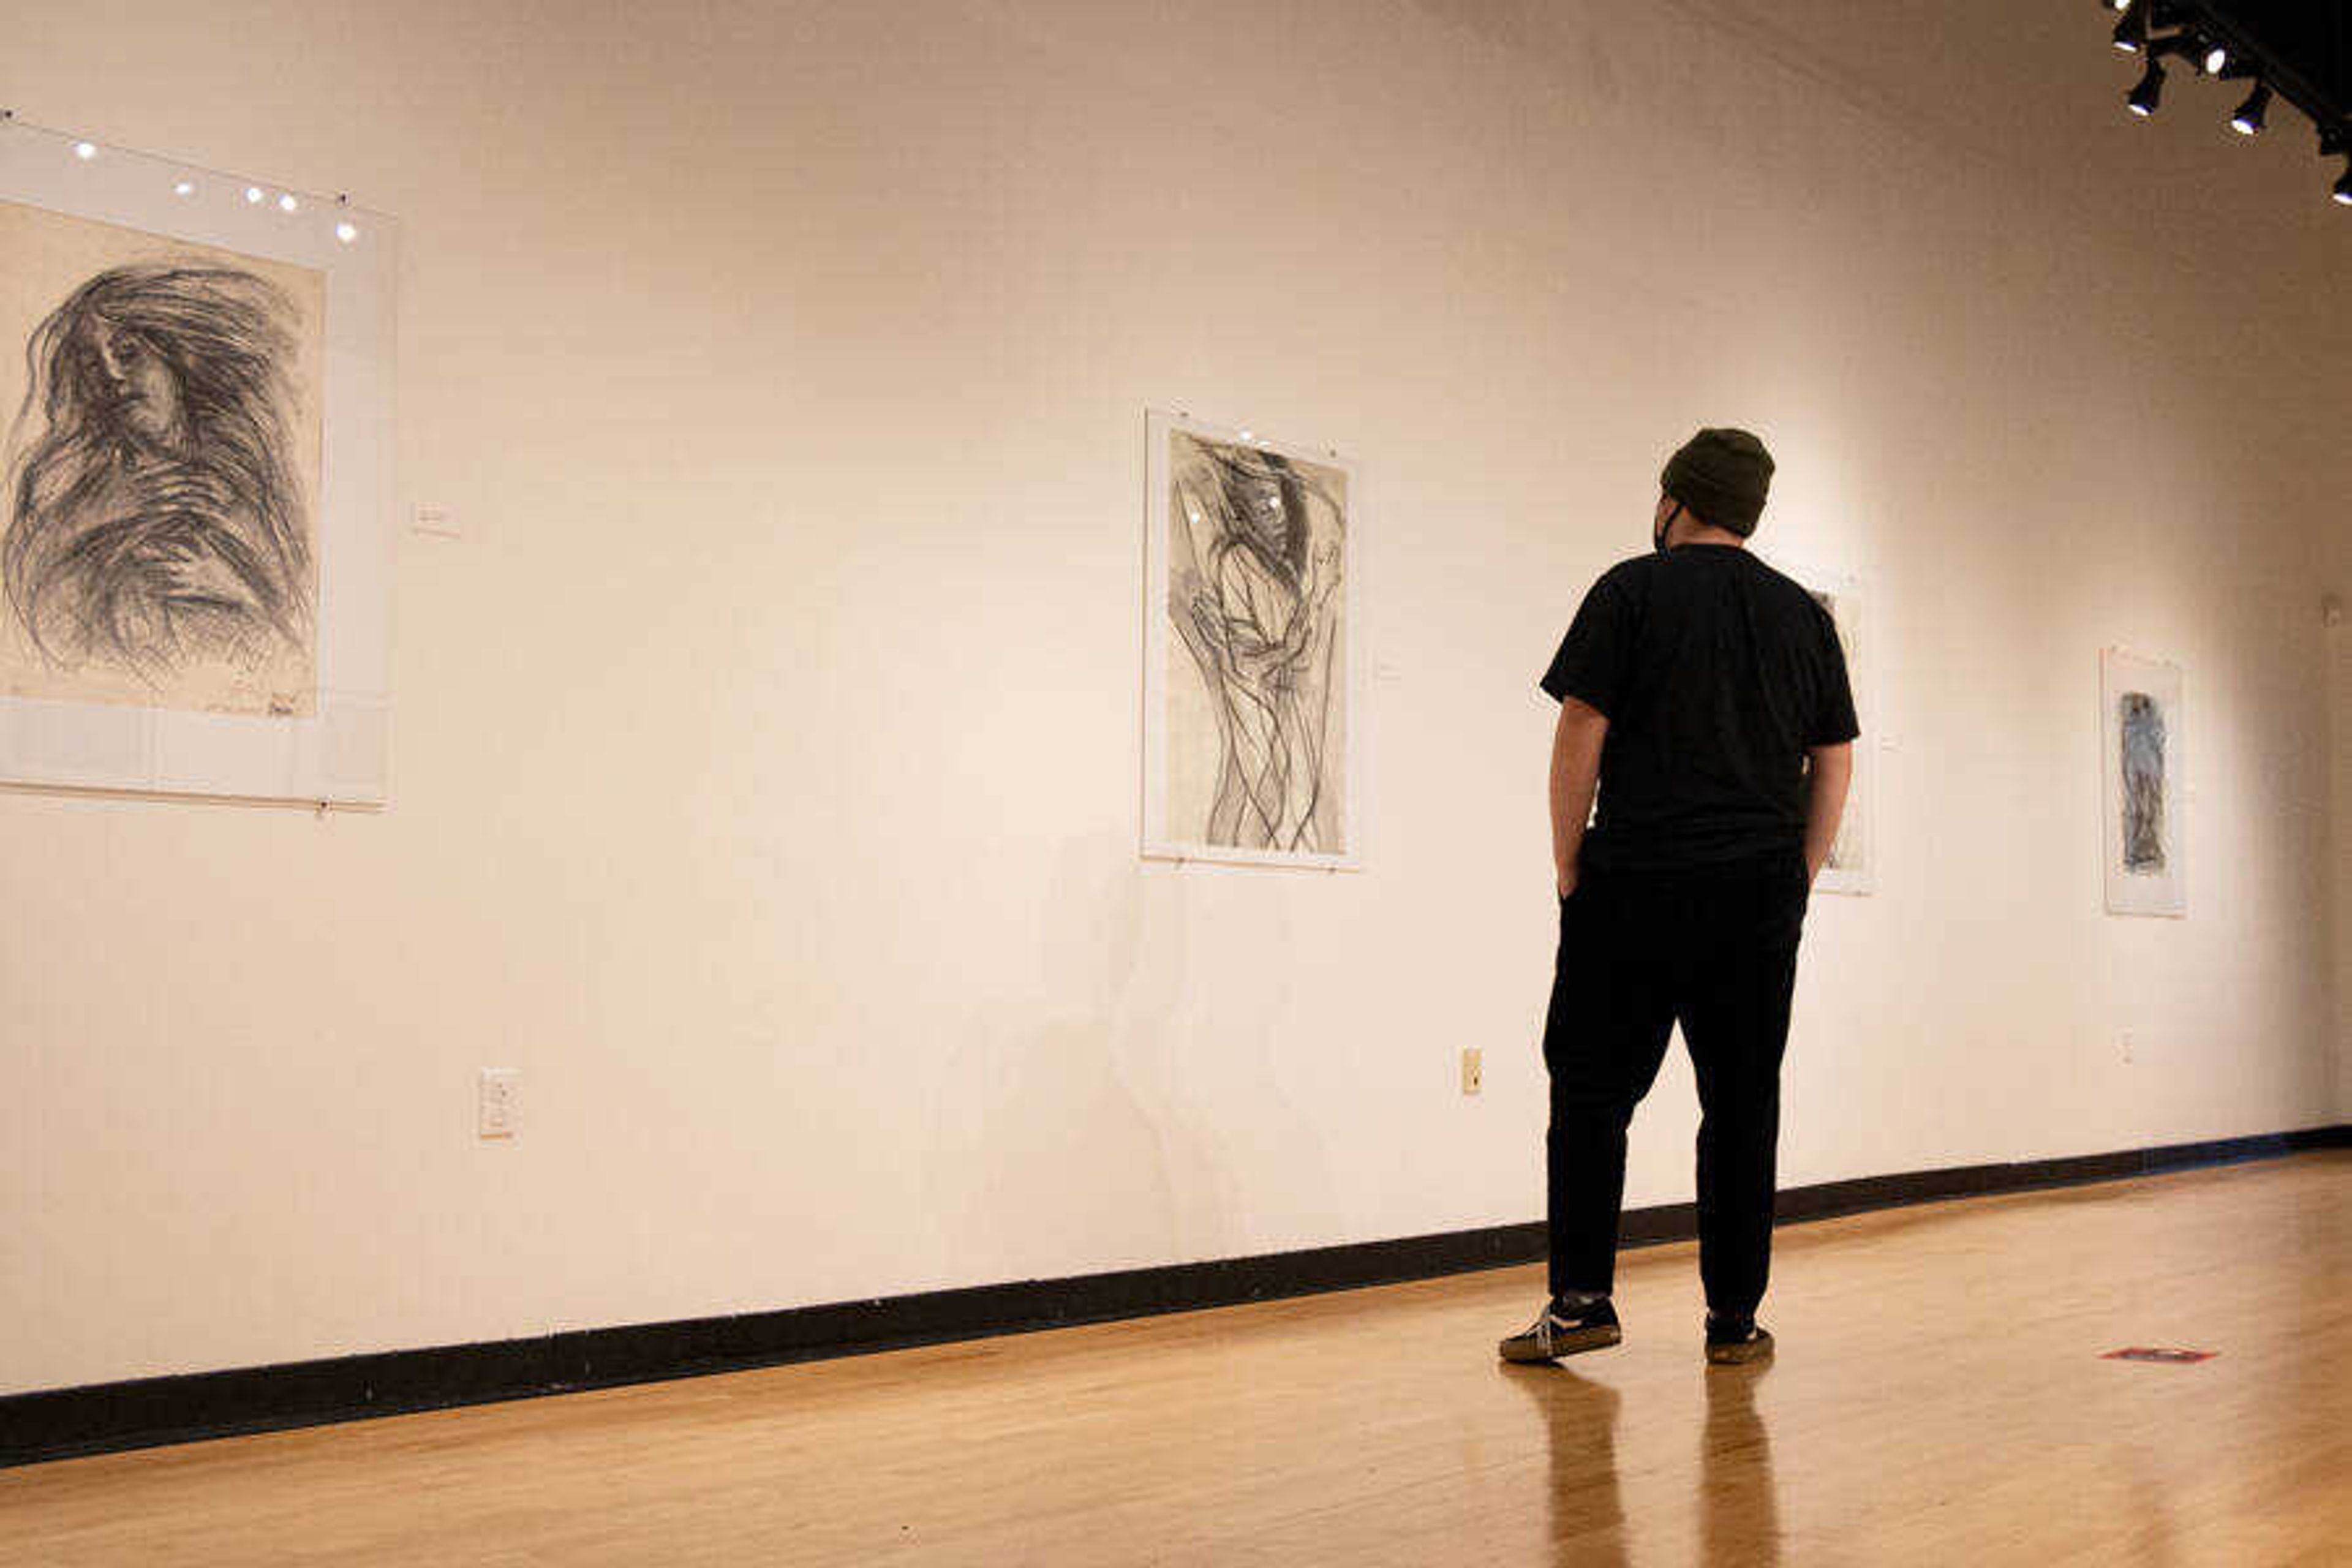 Senior, John Stringer walks through the "Art From The Heart" gallery at Crisp Museum. October 8, 2020.